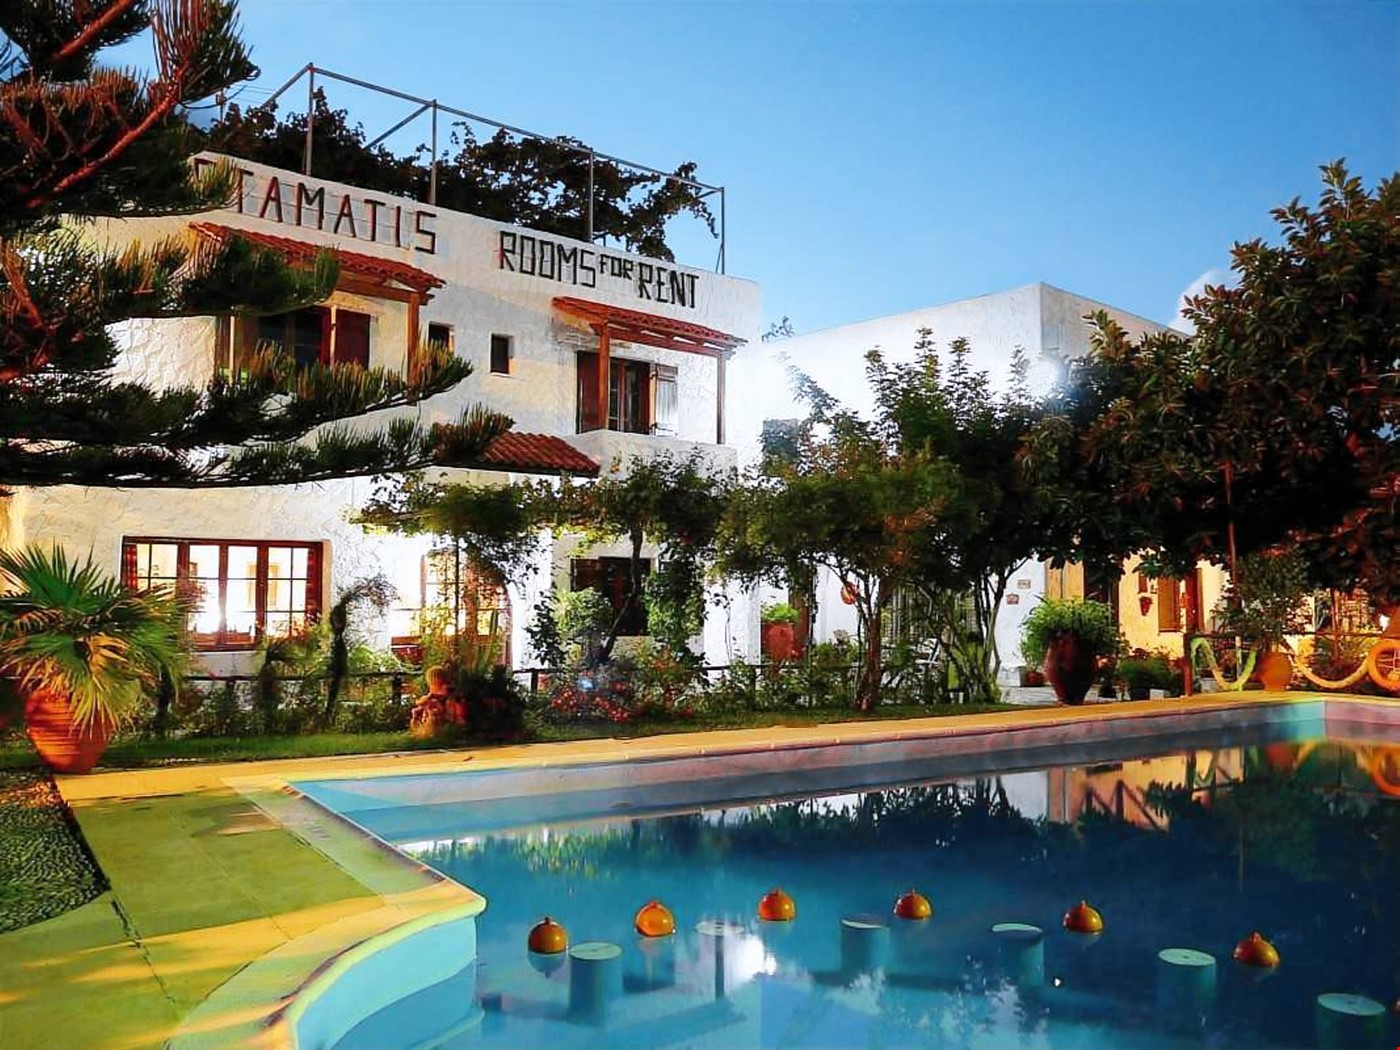 Hotel Pirgos Psilonerou, Platanias, Crete, Chania, Greece nomad remote 580c6cbb-5c27-4cfe-b959-8e96b2df312b_Evening 2.jpg